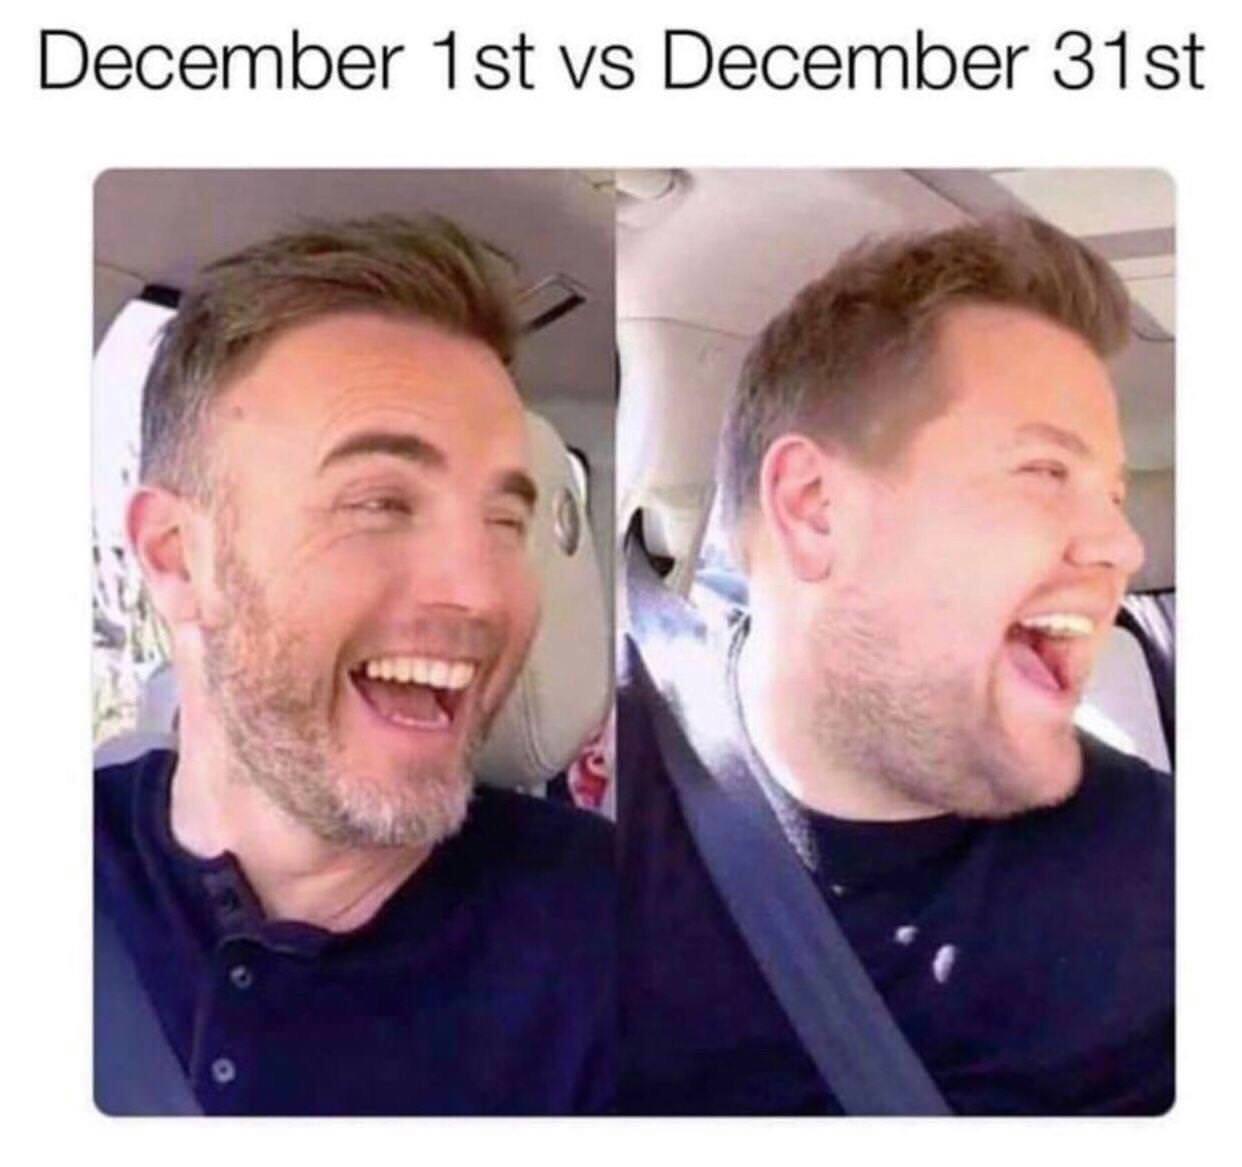 all inclusive meme - December 1st vs December 31st